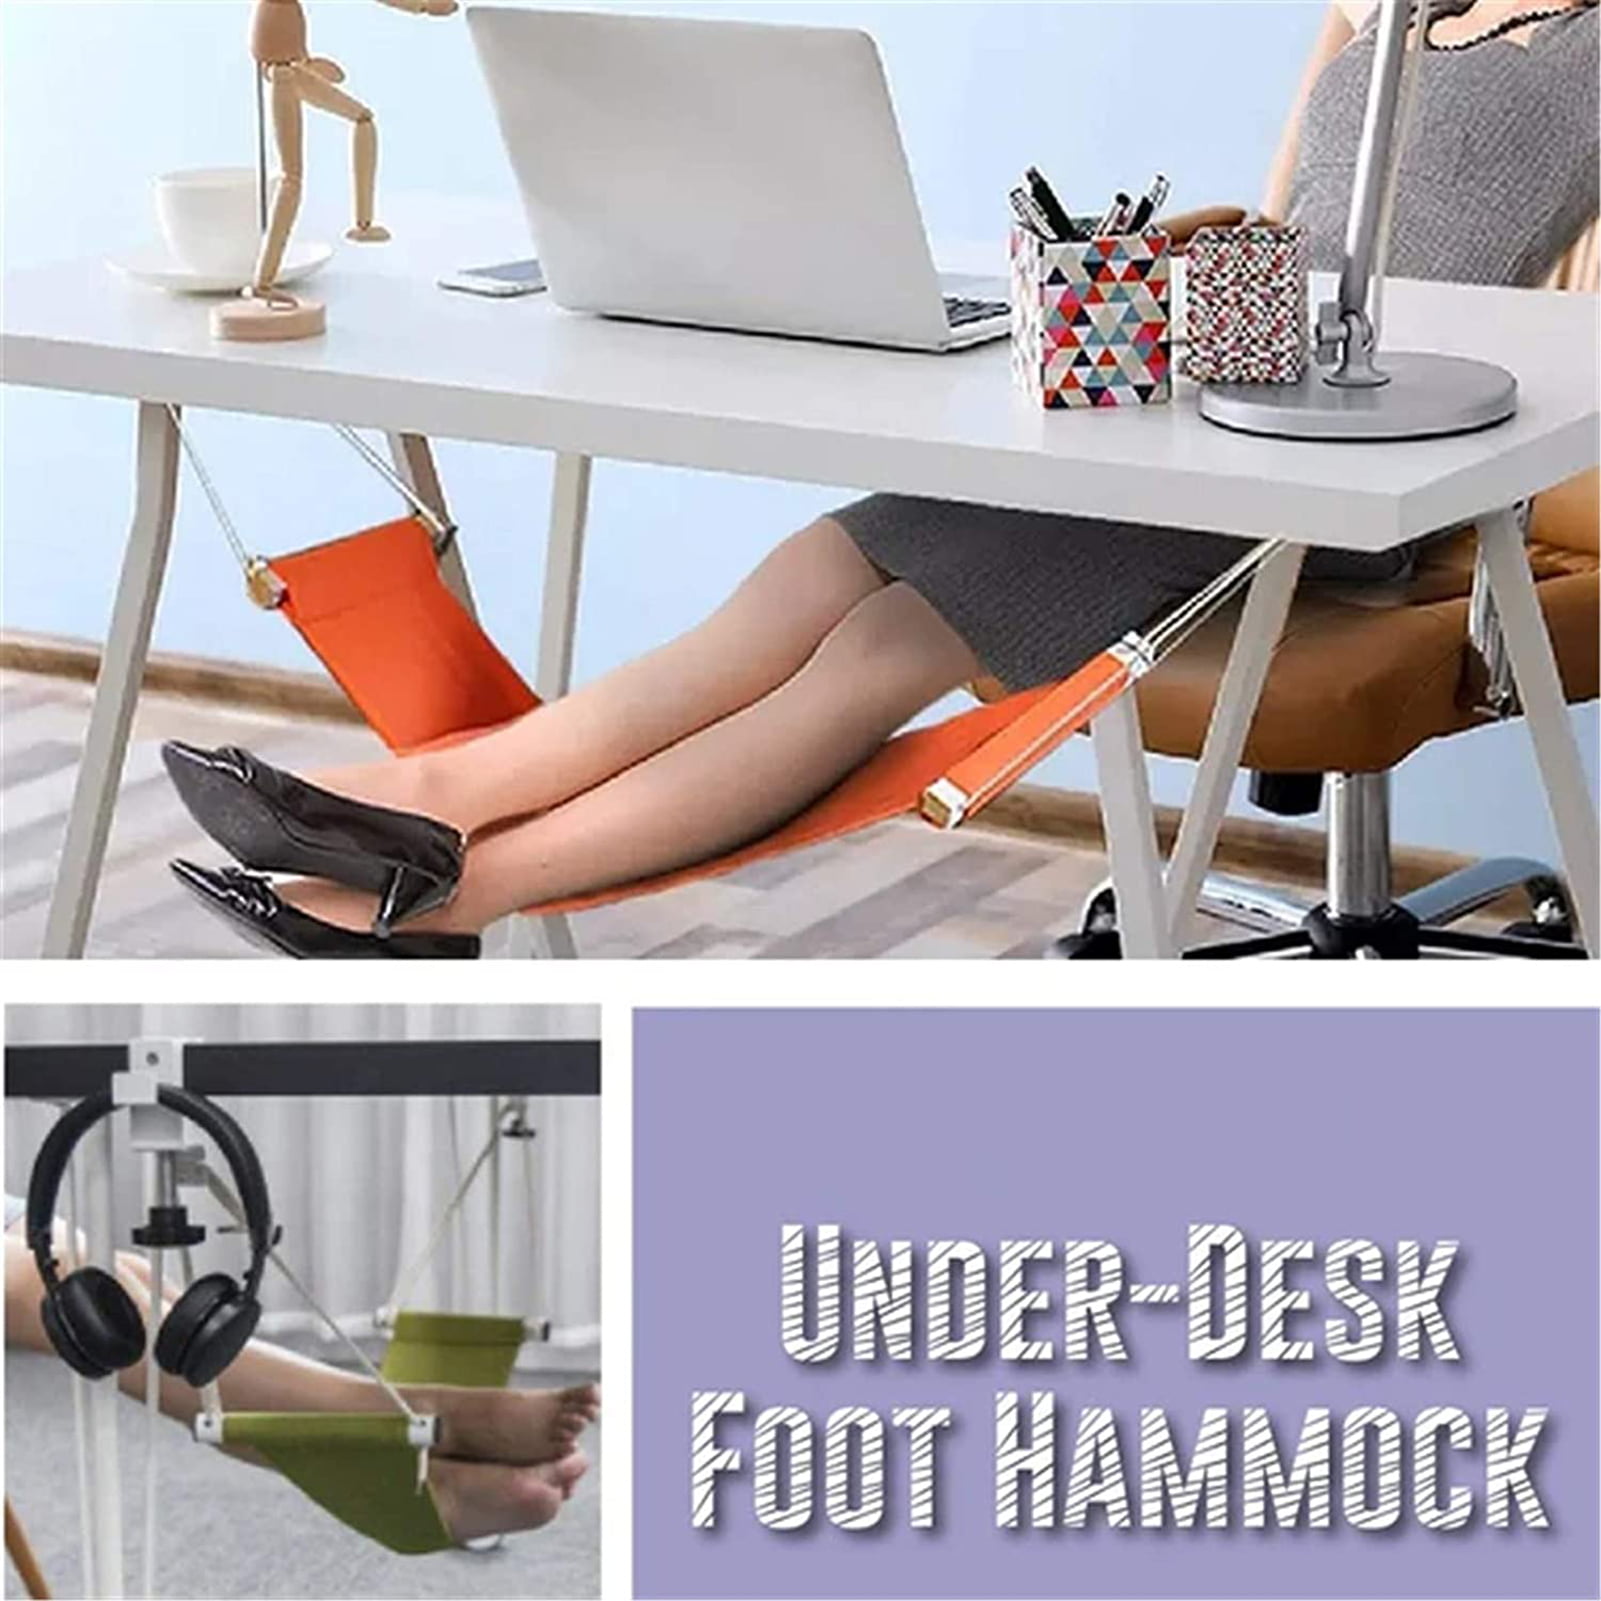 Table Feet Hammock - GEEKYGET